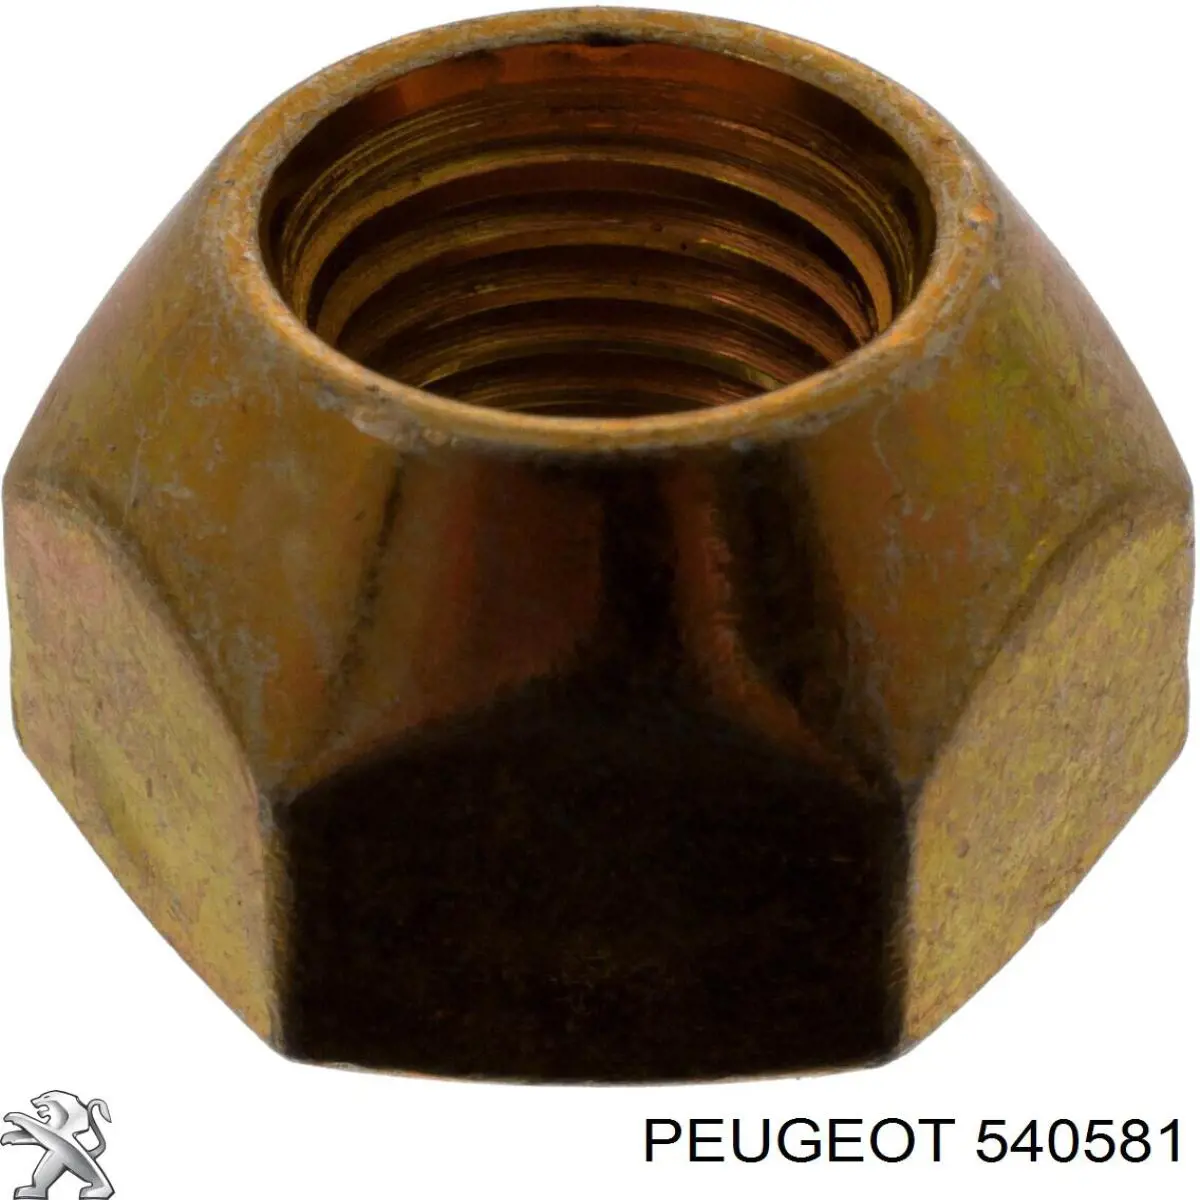 540581 Peugeot/Citroen tuerca de rueda